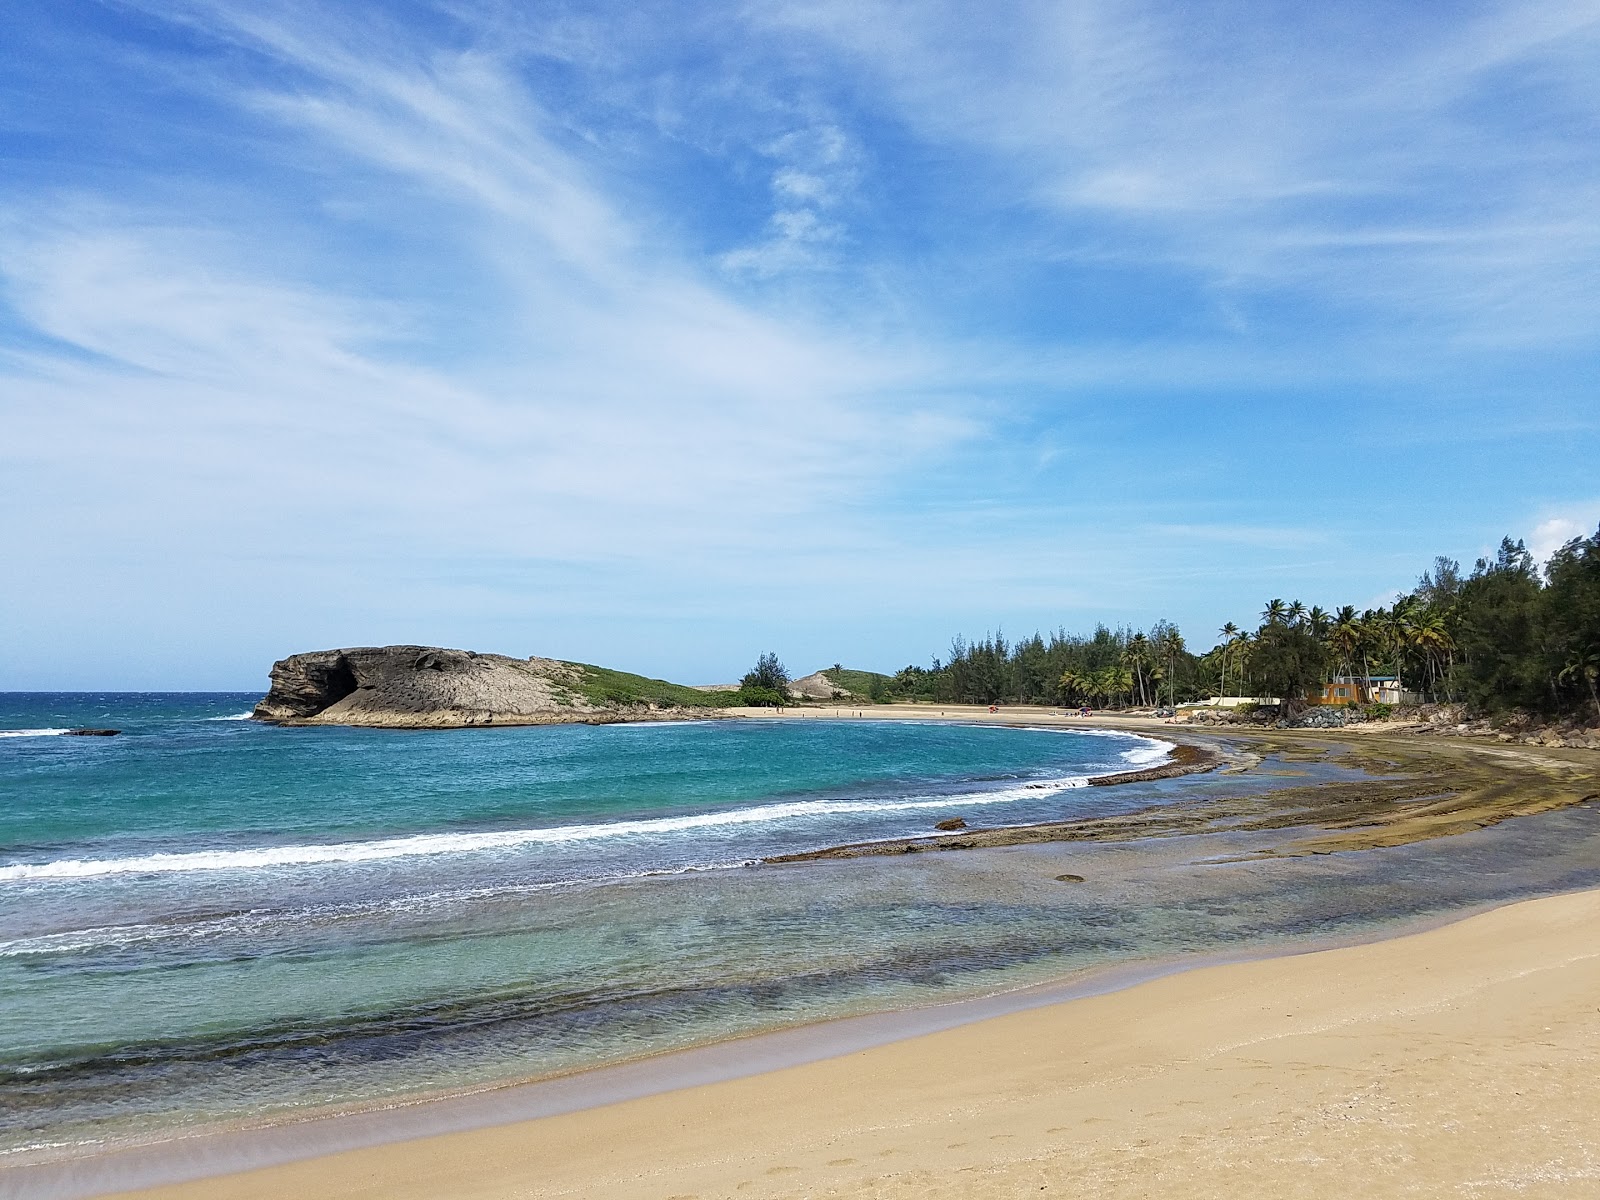 Zdjęcie Caracoles beach - popularne miejsce wśród znawców relaksu